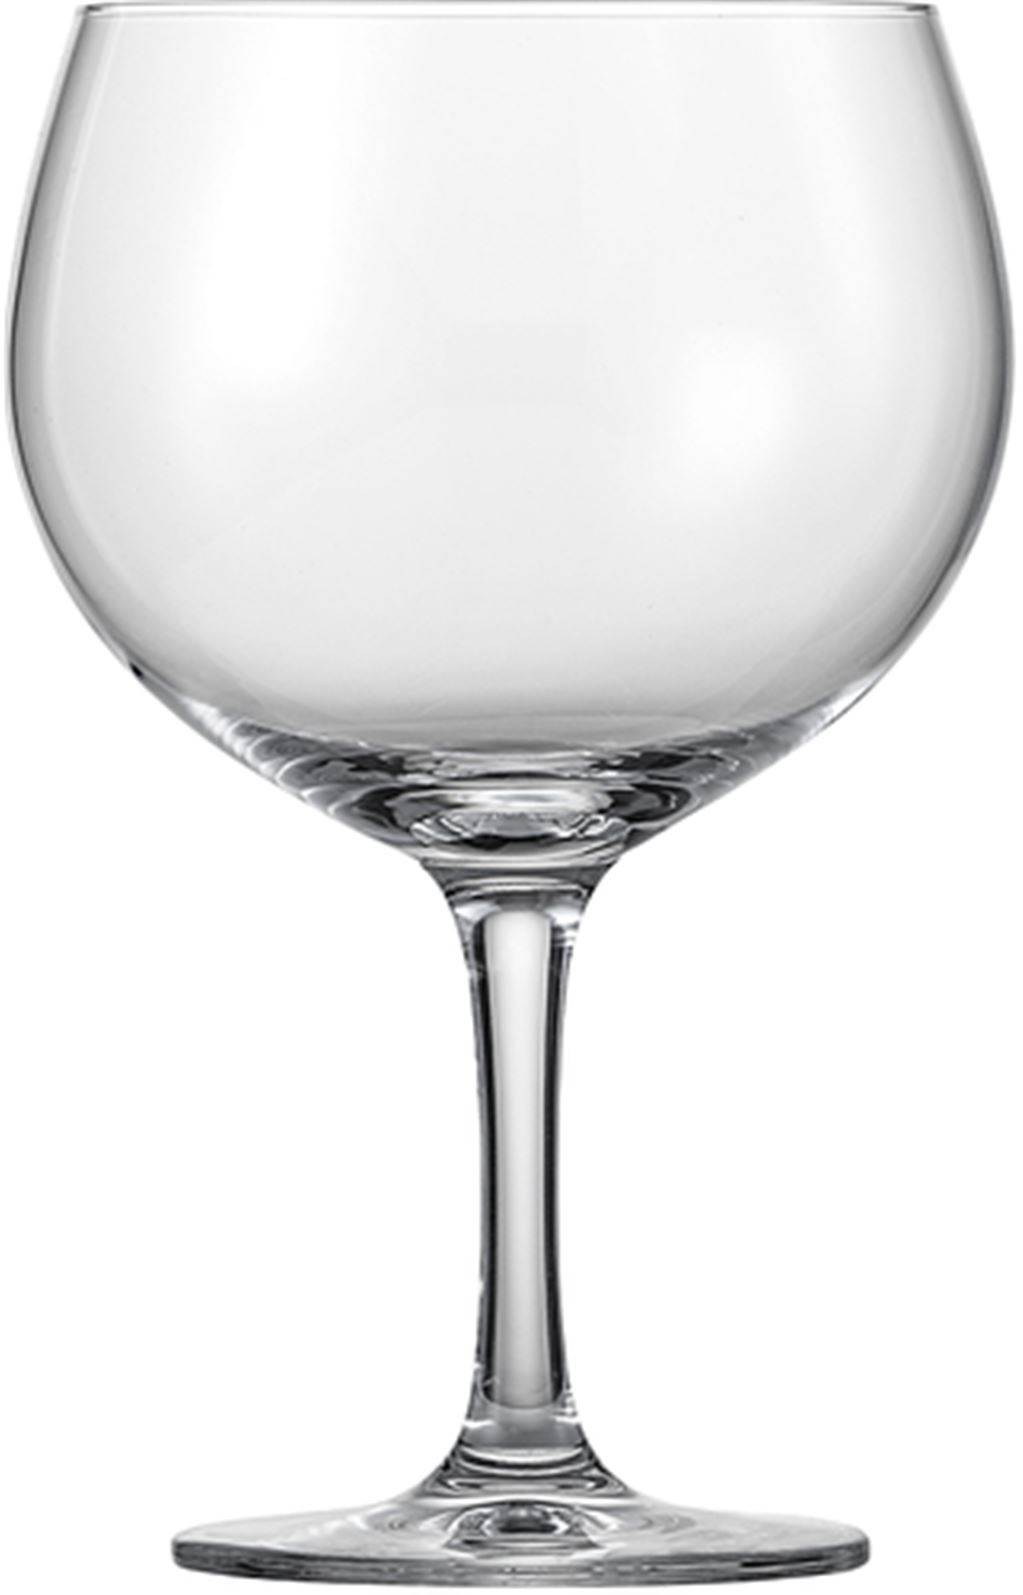 Schott zwiesel, bar special, kozarec za gin tonic, 696 ml, 1 kos